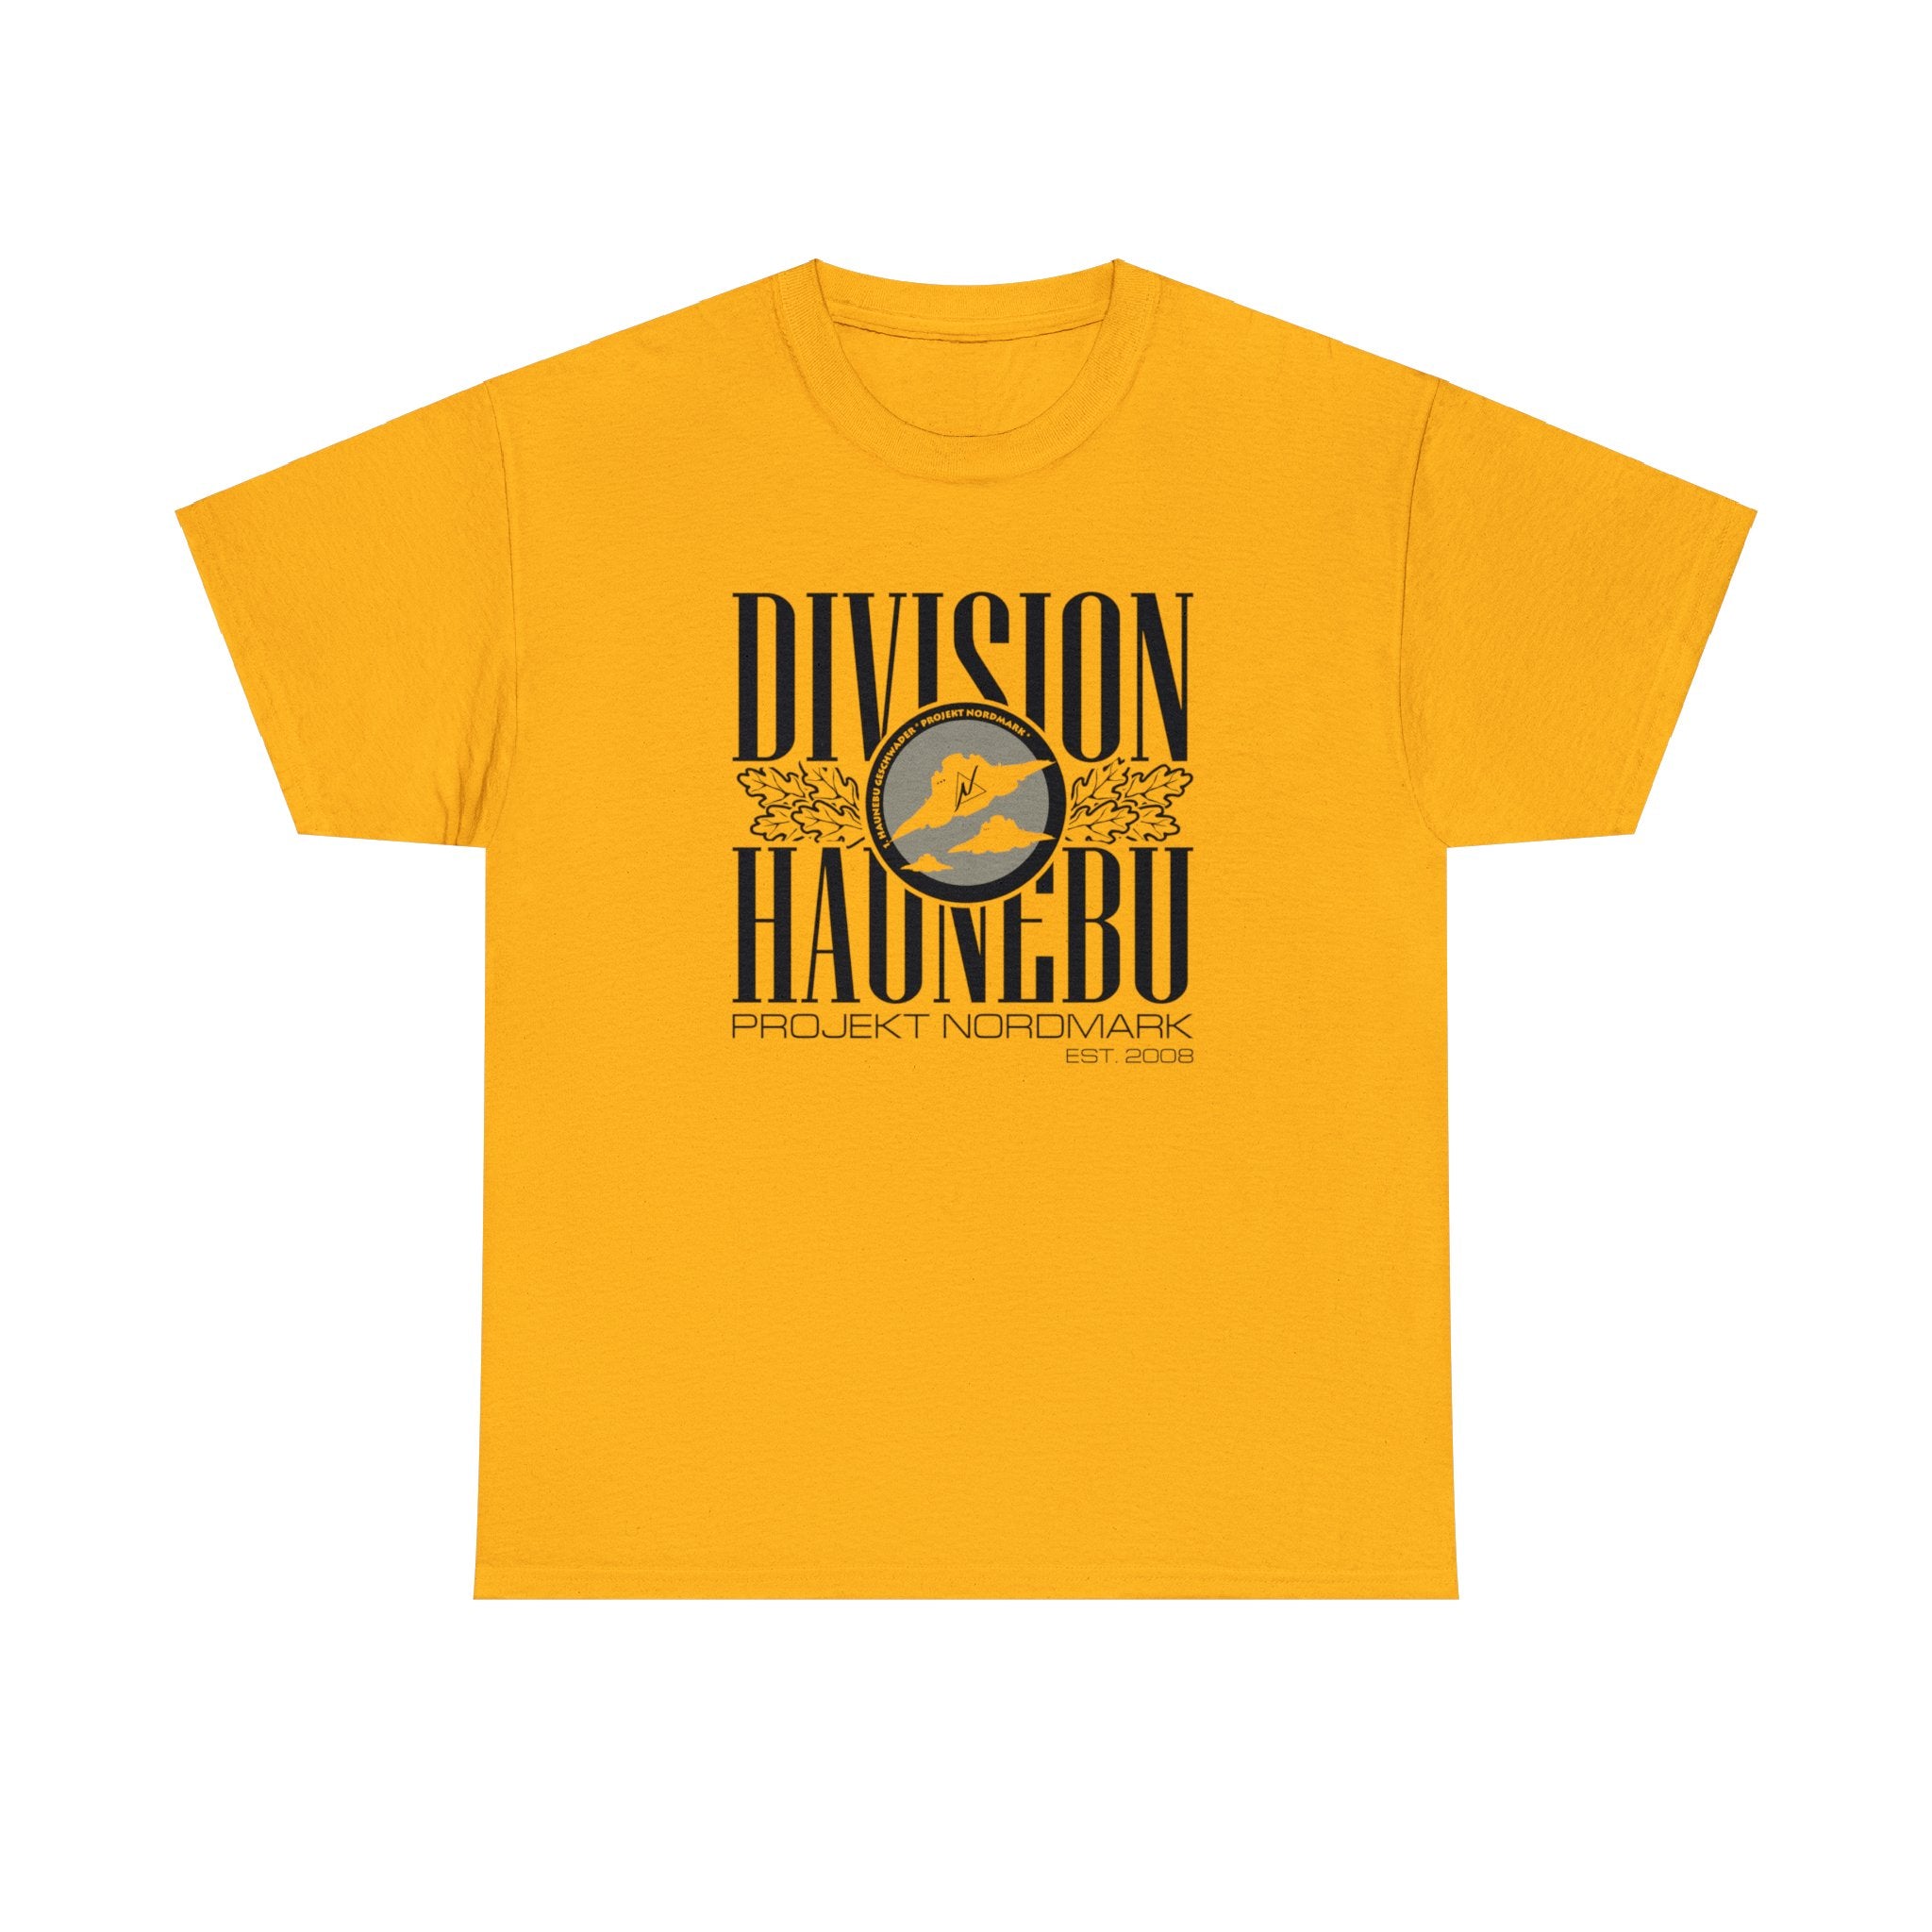 Division Haunebu - PN - T-Shirt